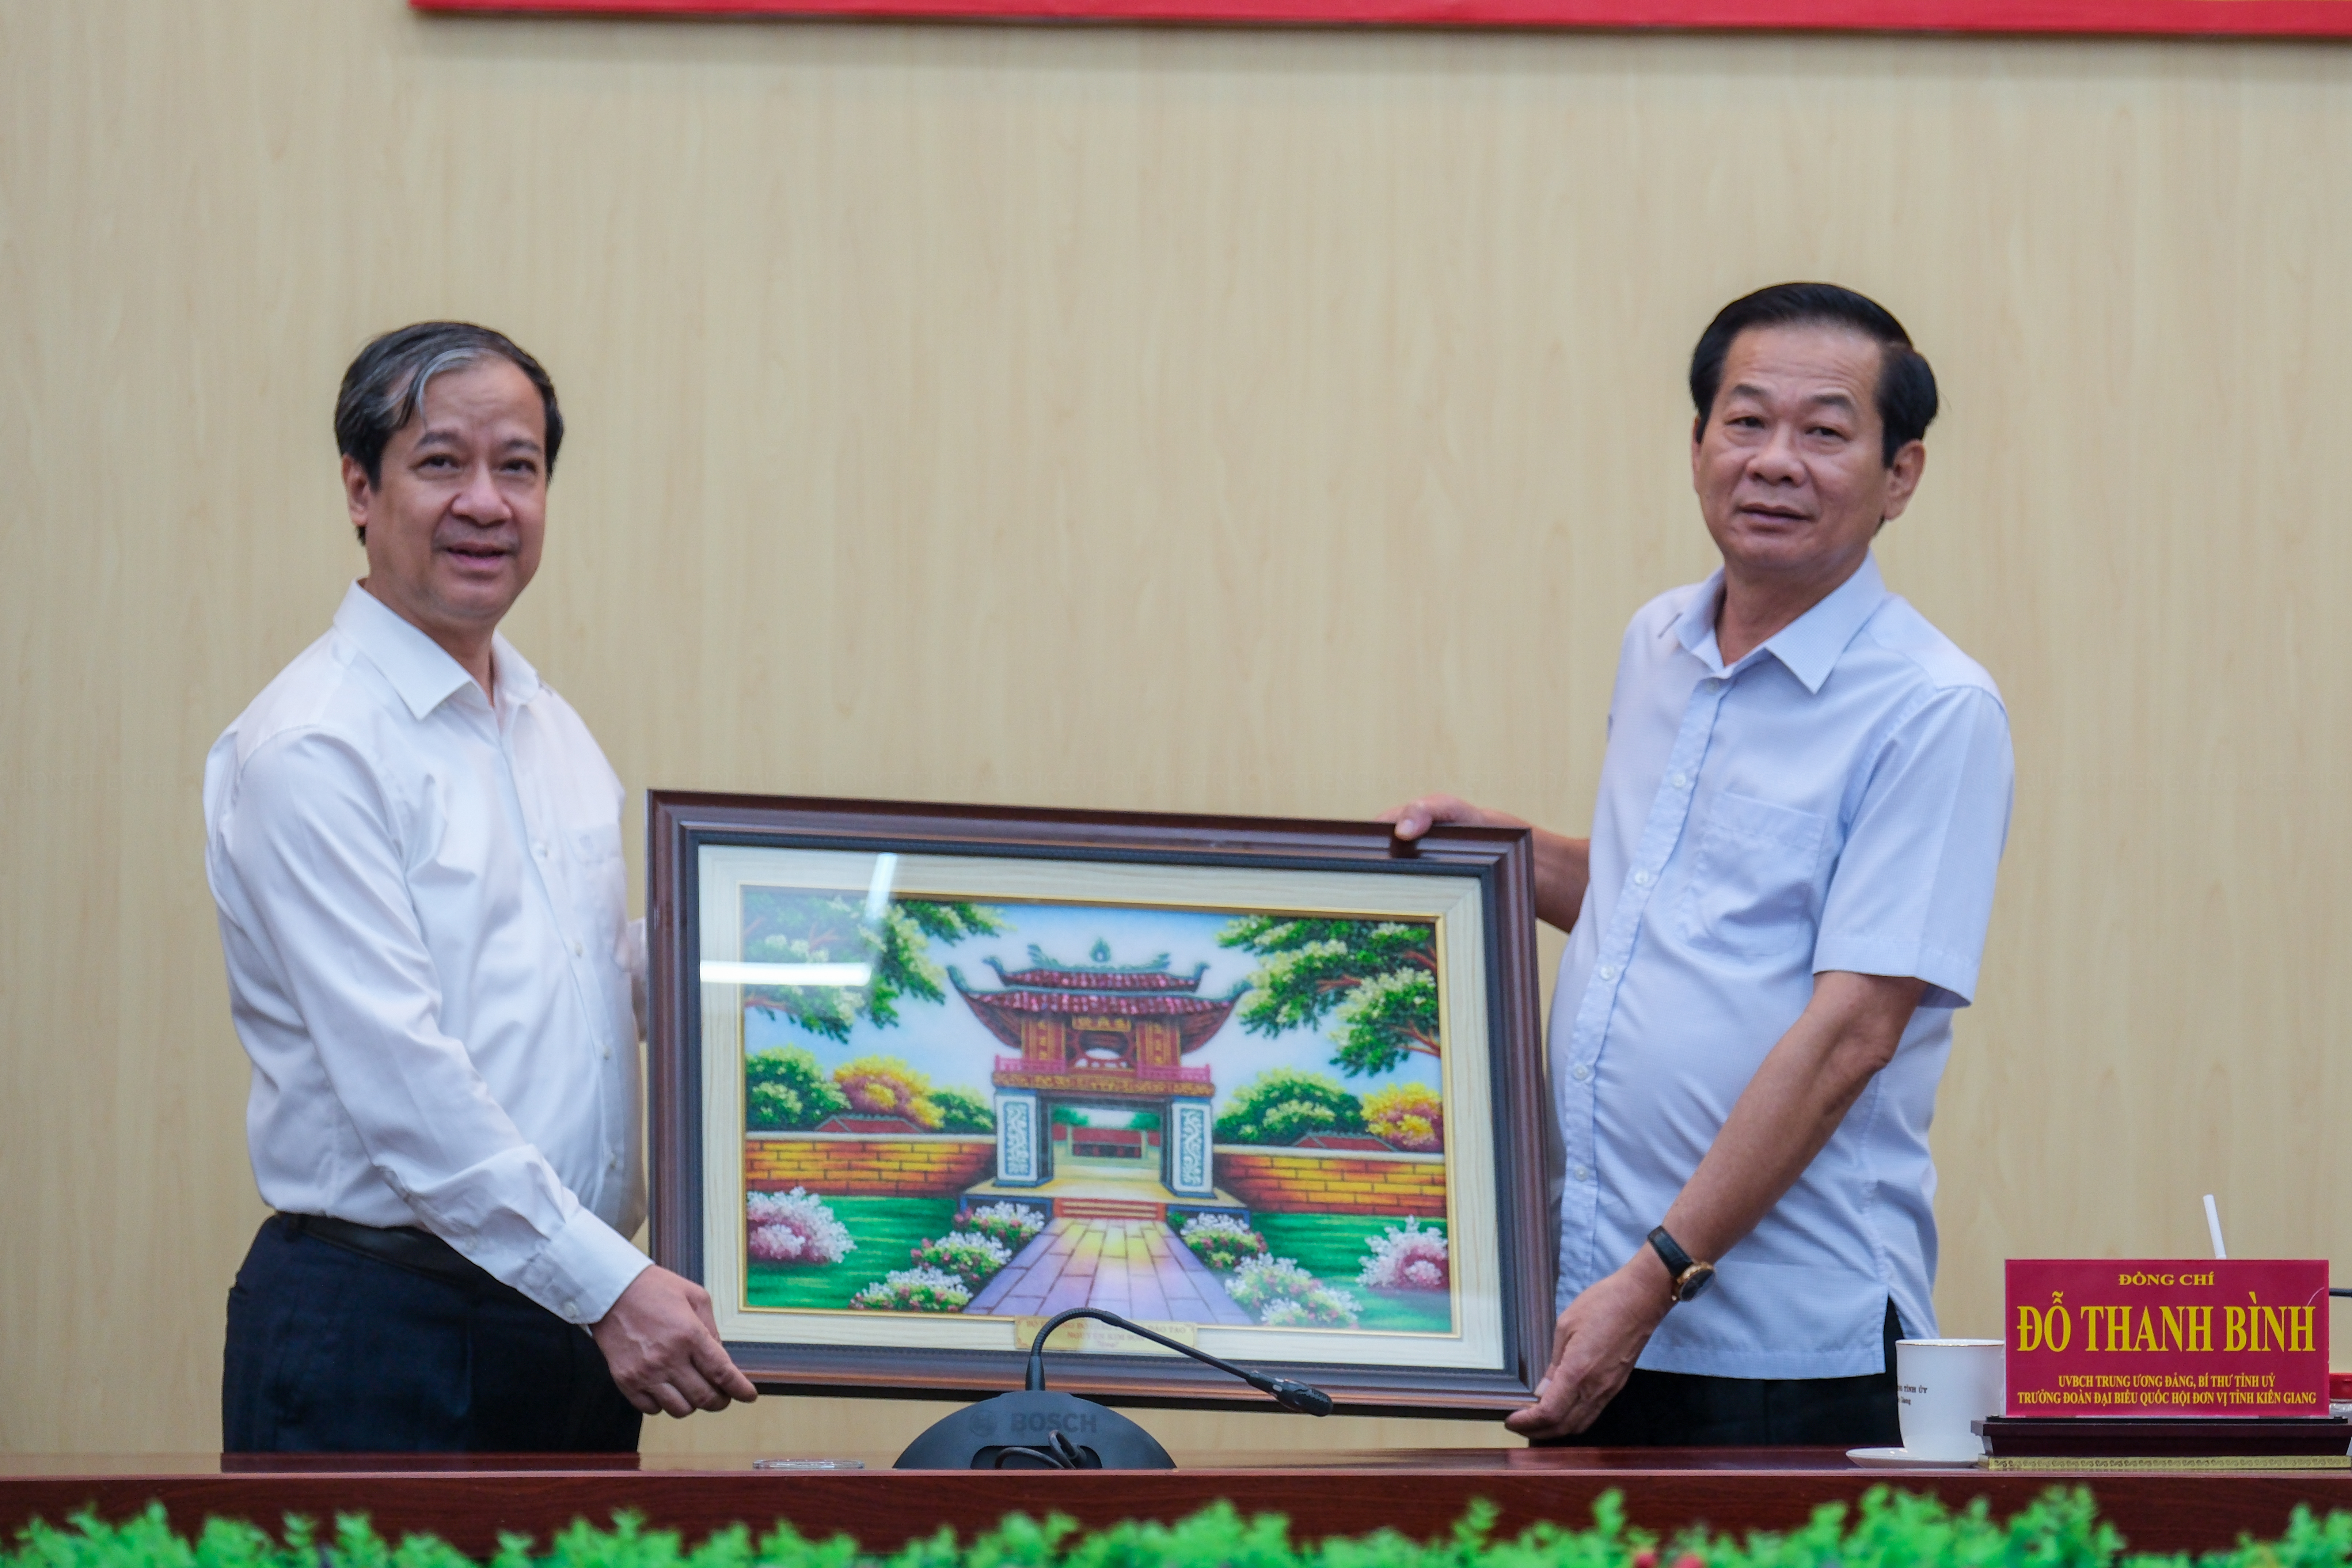  Bộ trưởng Bộ GD&ĐT Nguyễn Kim Sơn tặng bức tranh lưu niệm cho tỉnh Kiên Giang nhân chuyến công tác.